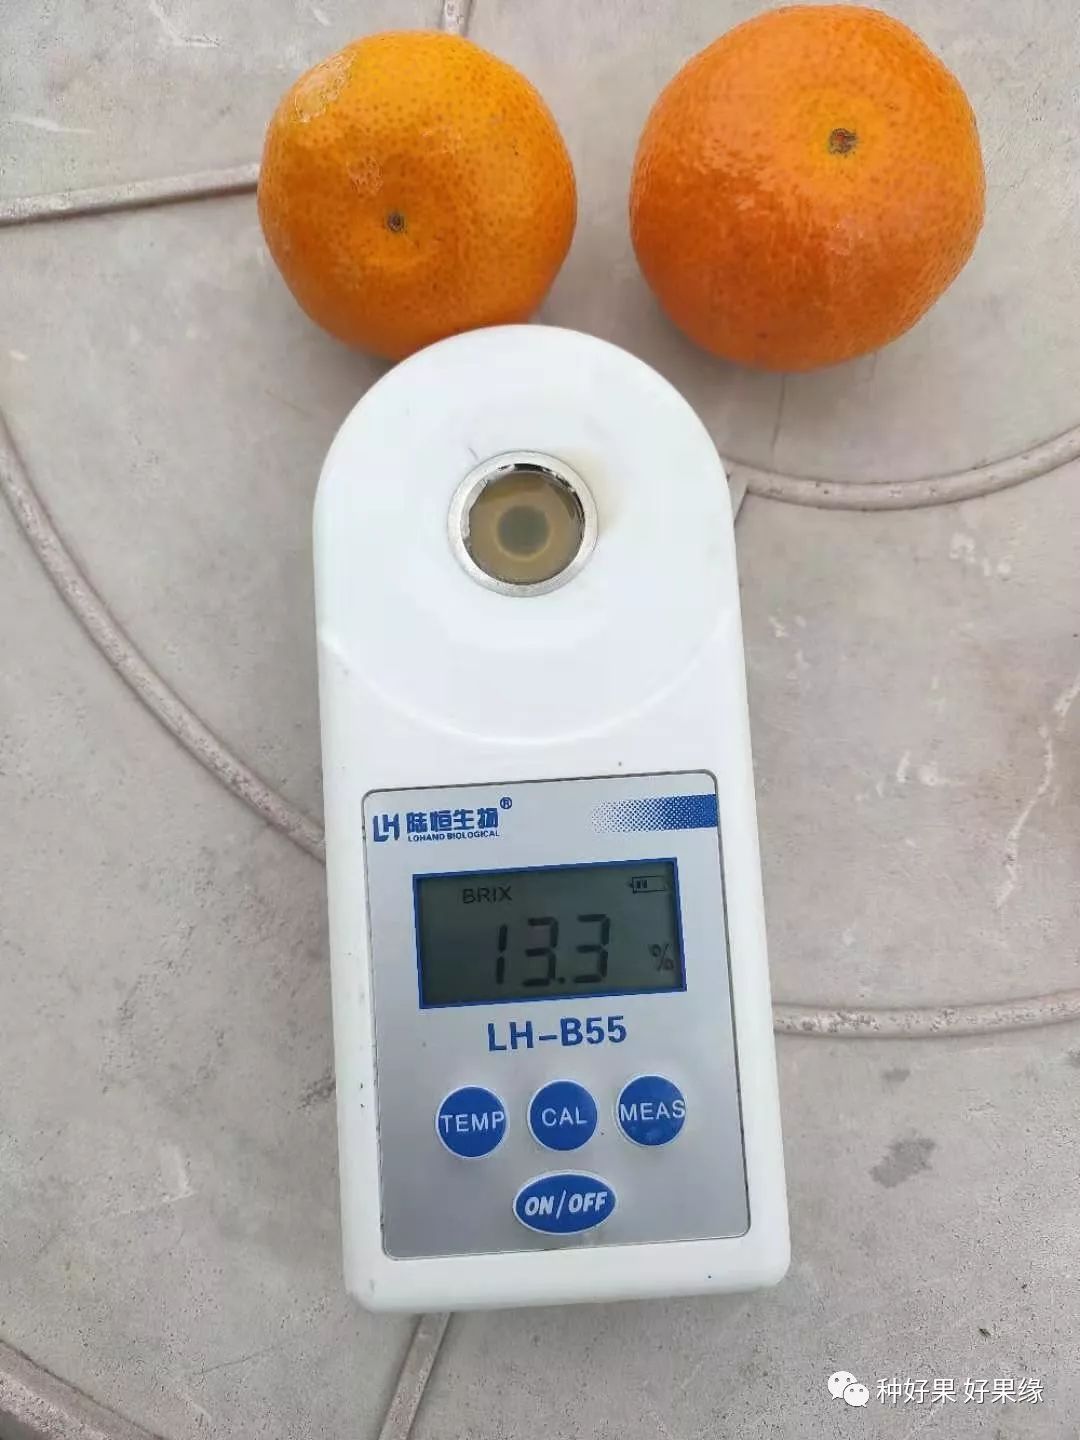 金秋砂糖橘即将上市,订购价高达5.3元/斤